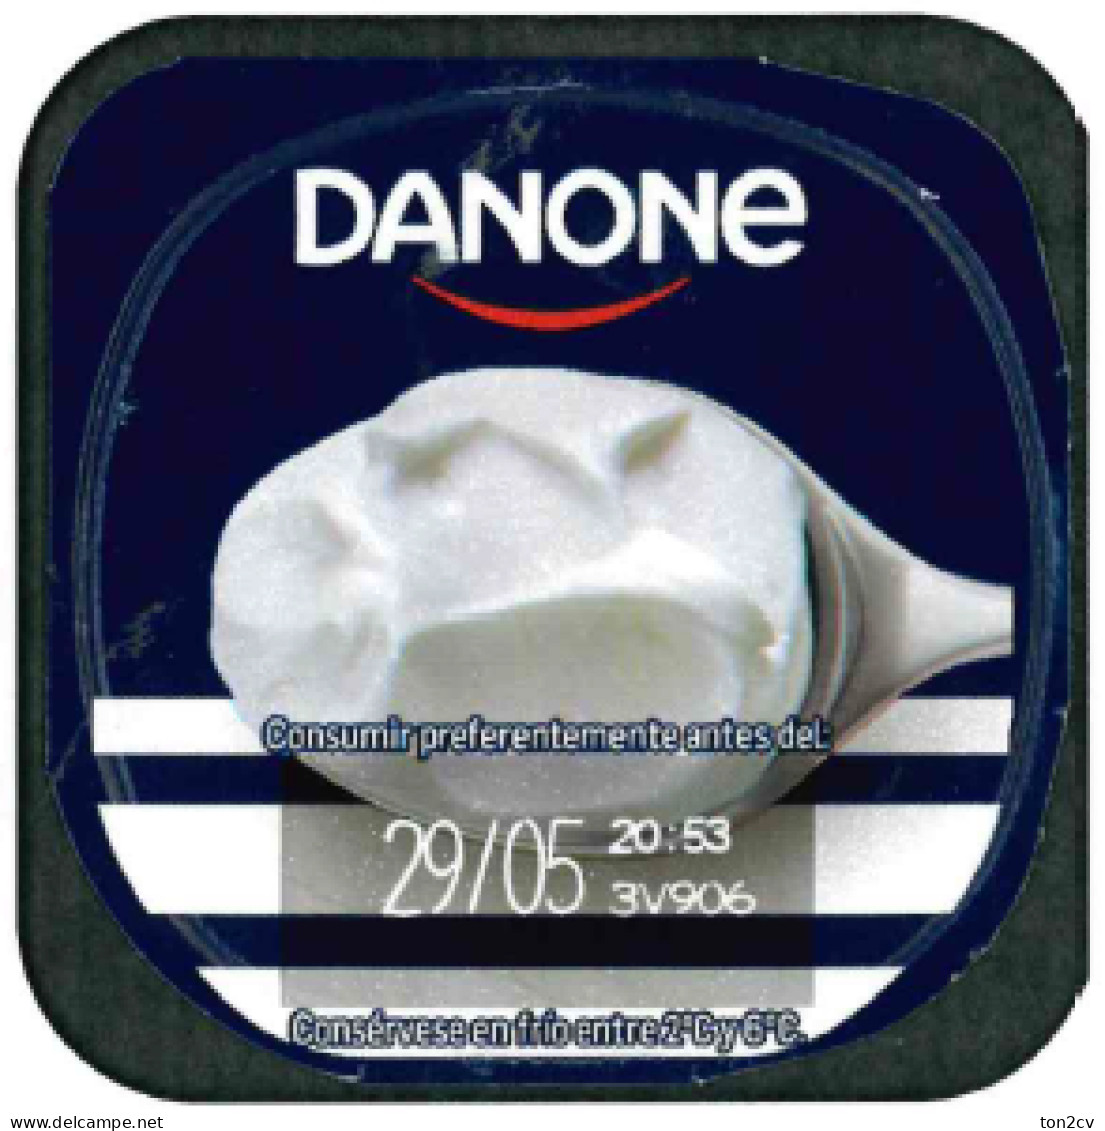 Tapa De Yogurt Danone - Coperchietti Di Panna Per Caffè